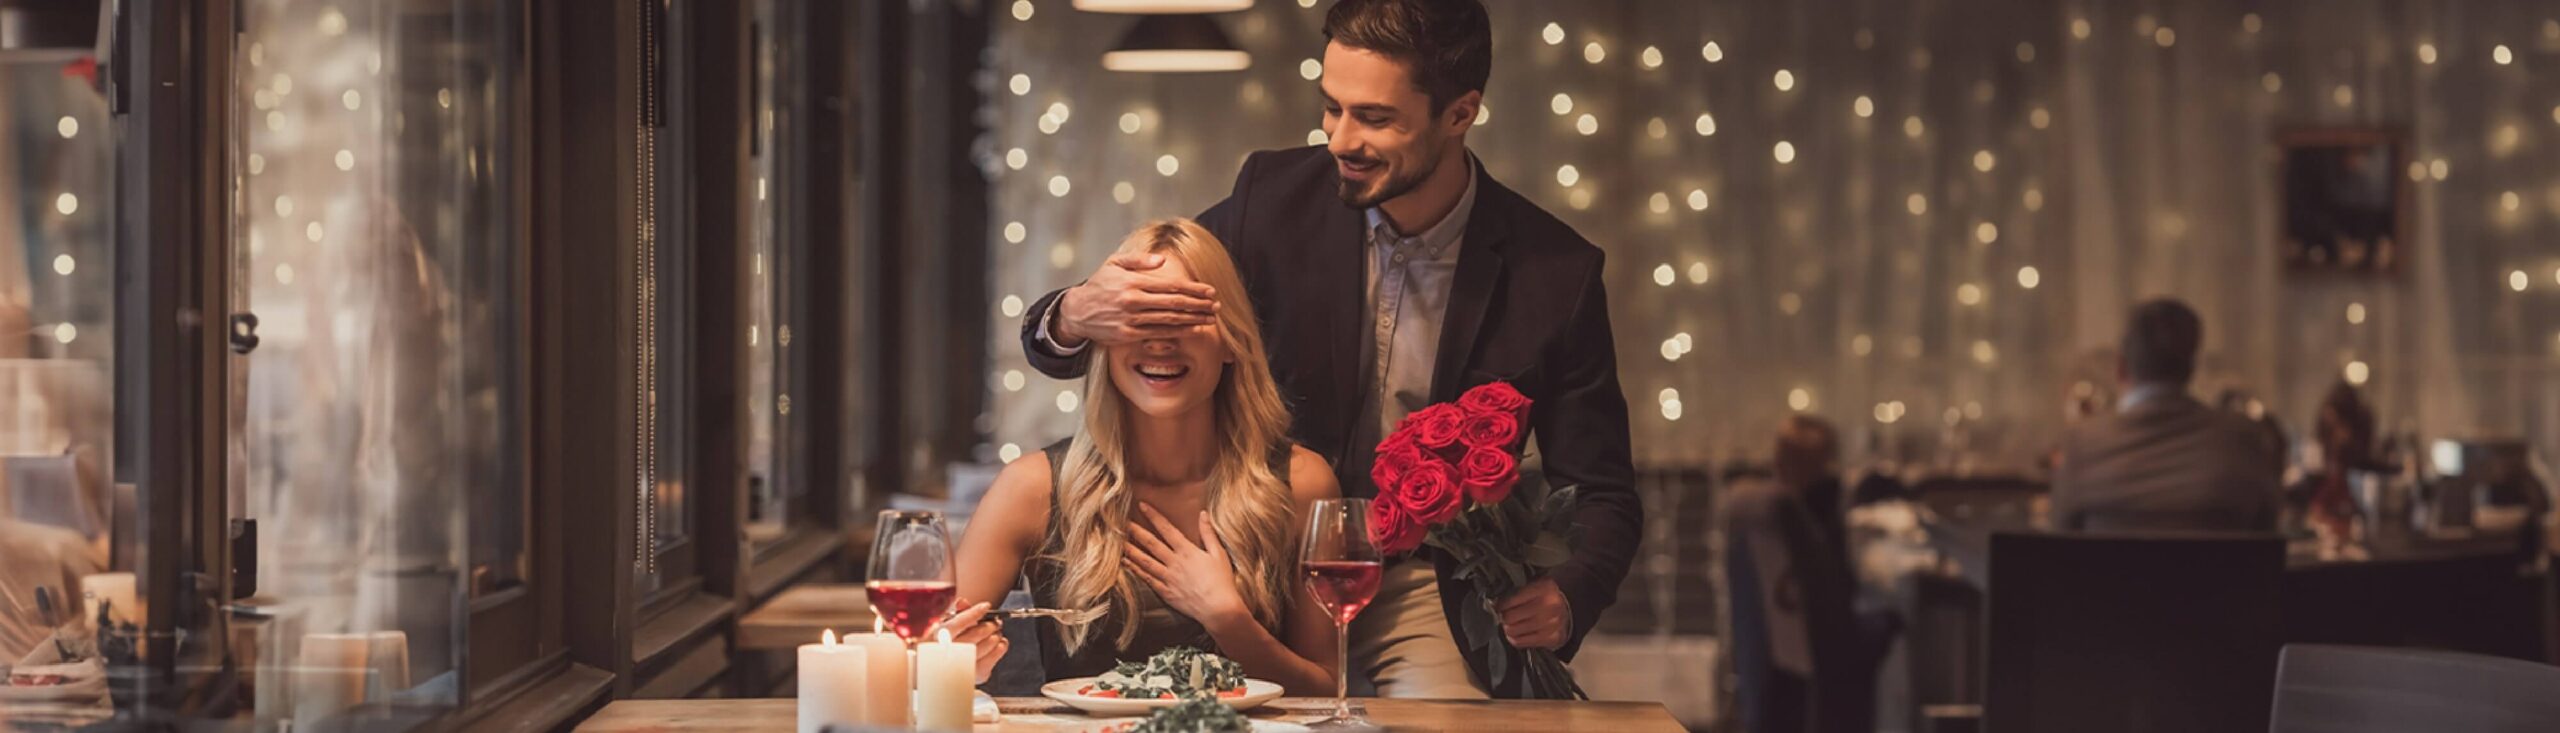 O MB WAY dá-lhe as melhores sugestões para o Dia dos Namorados